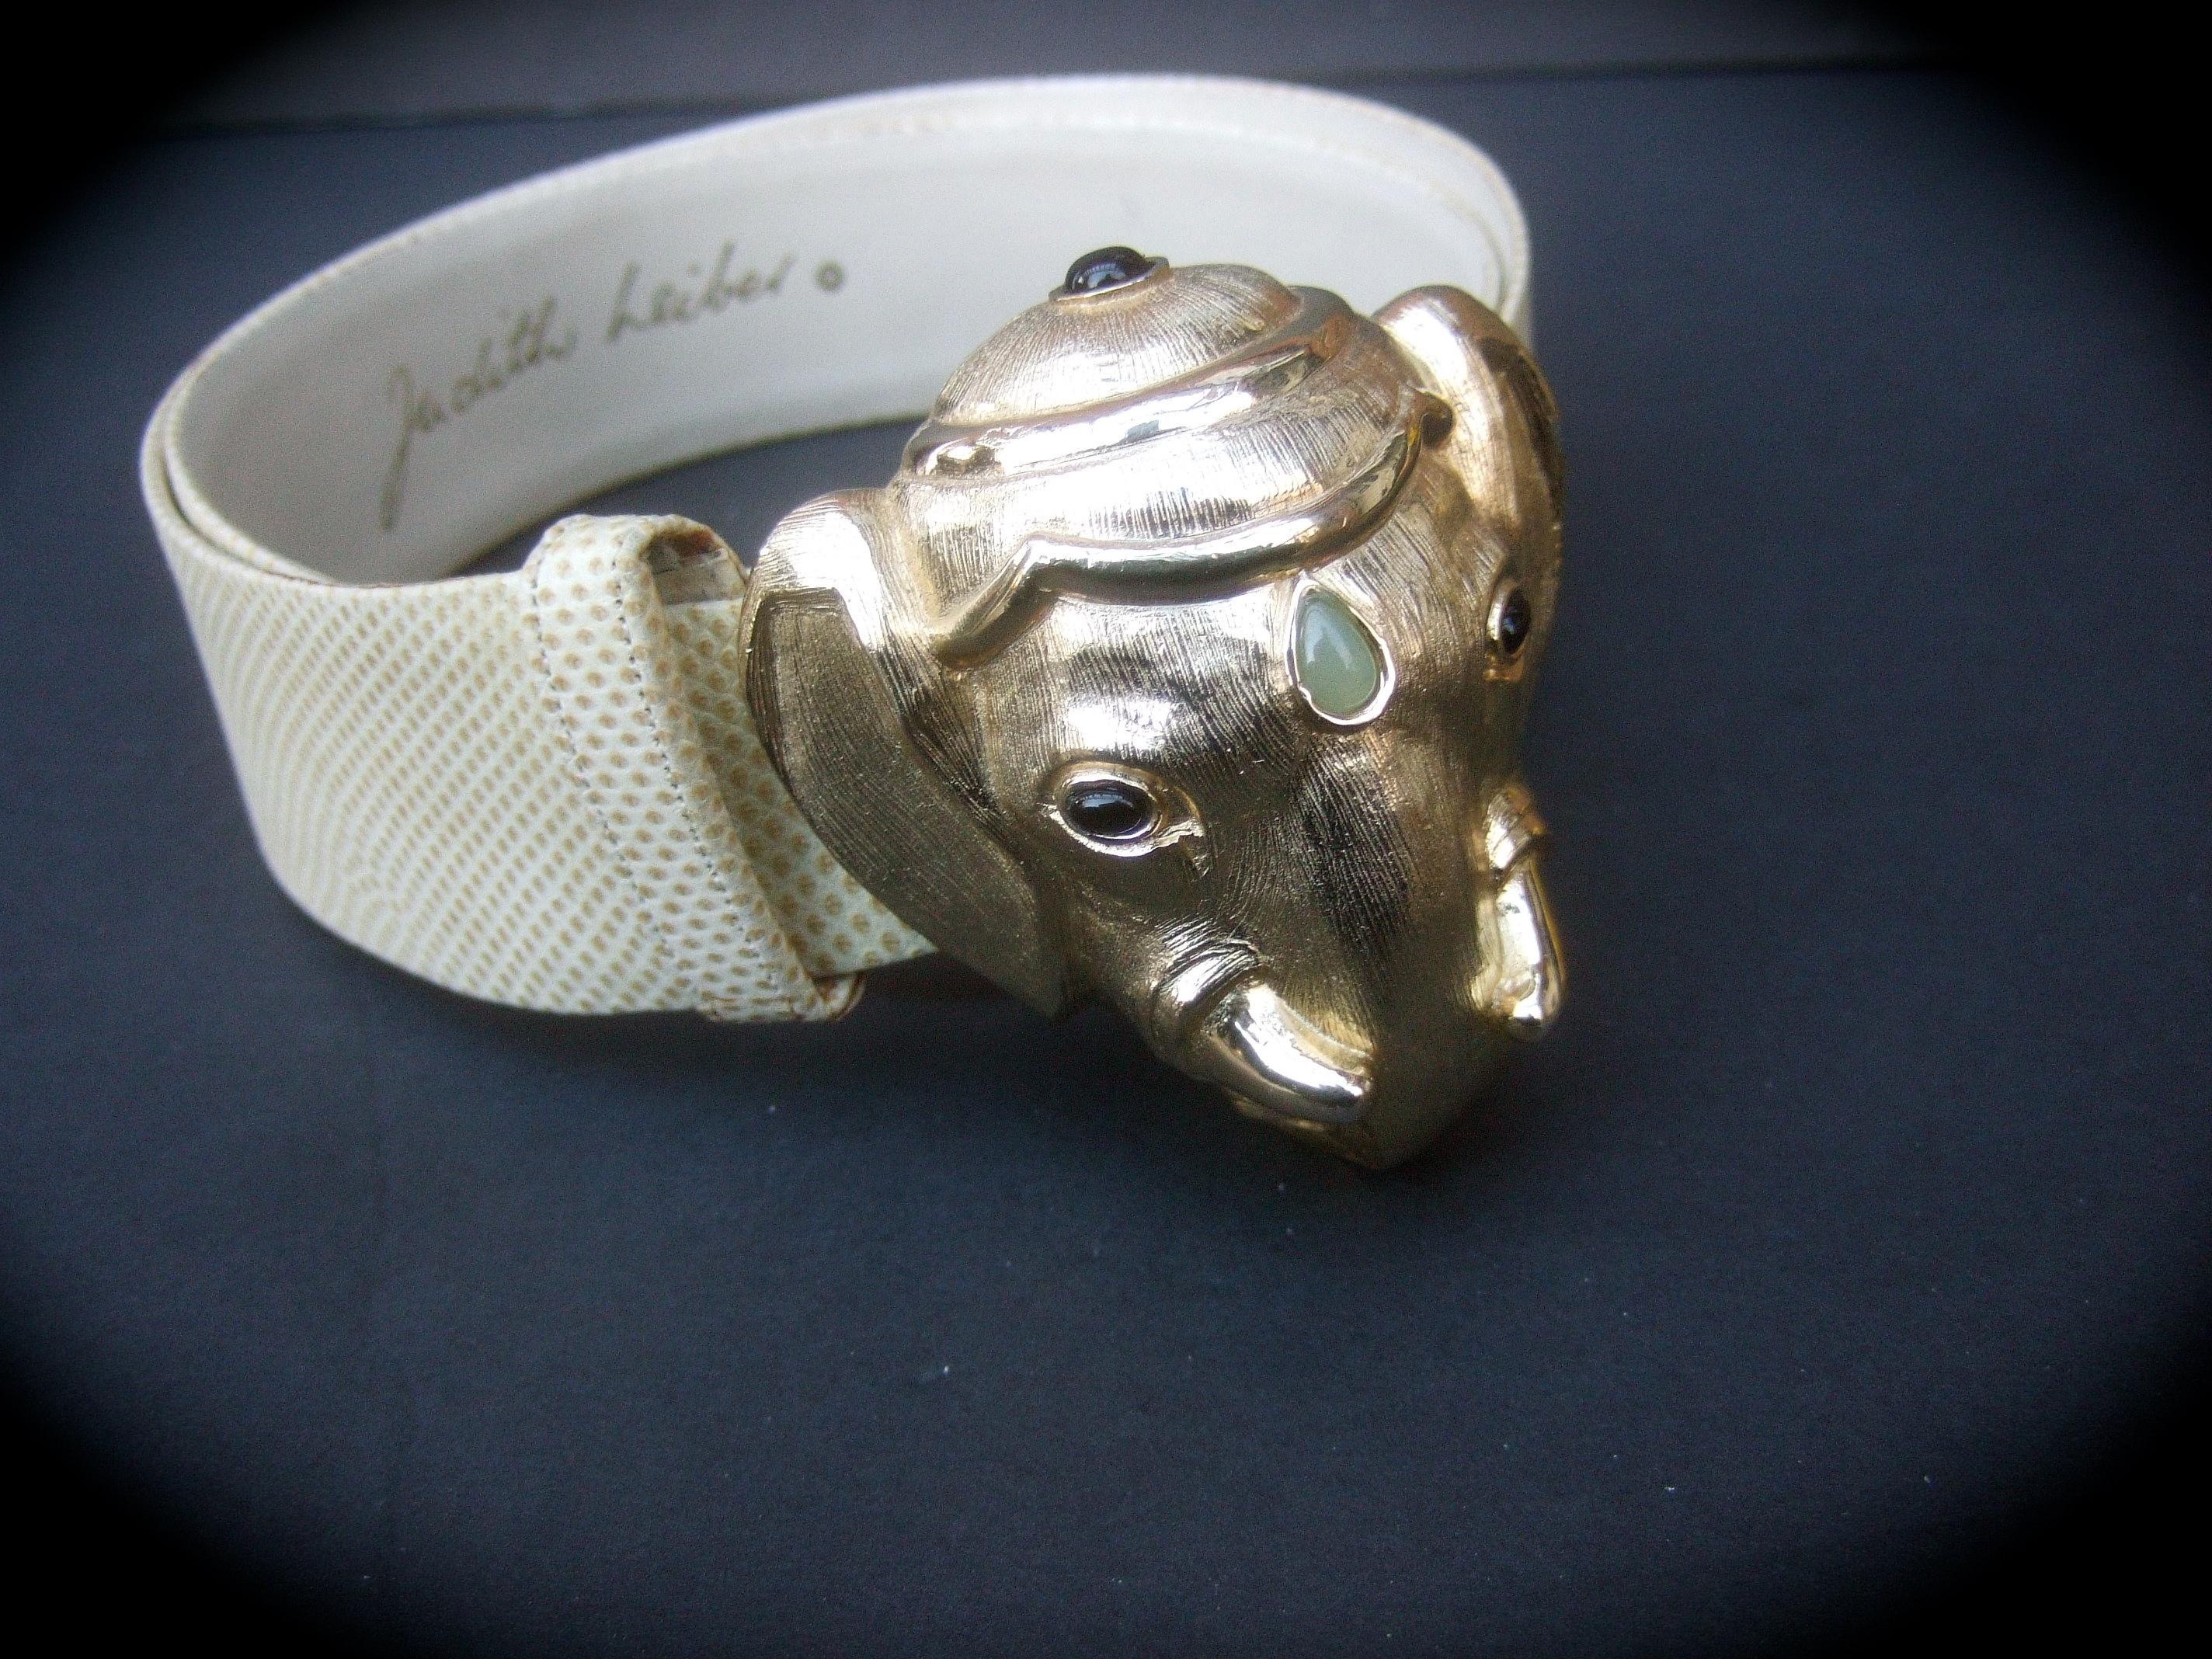 Judith Leiber Gürtel mit vergoldeter Elefantenschnalle aus Metall, 1980er Jahre
Der opulente Gürtel ist mit einer großflächigen Elefantenkopfschnalle aus gebürstetem, vergoldetem Metall verziert, die mit einer Sammlung von Glassteinen verziert ist,